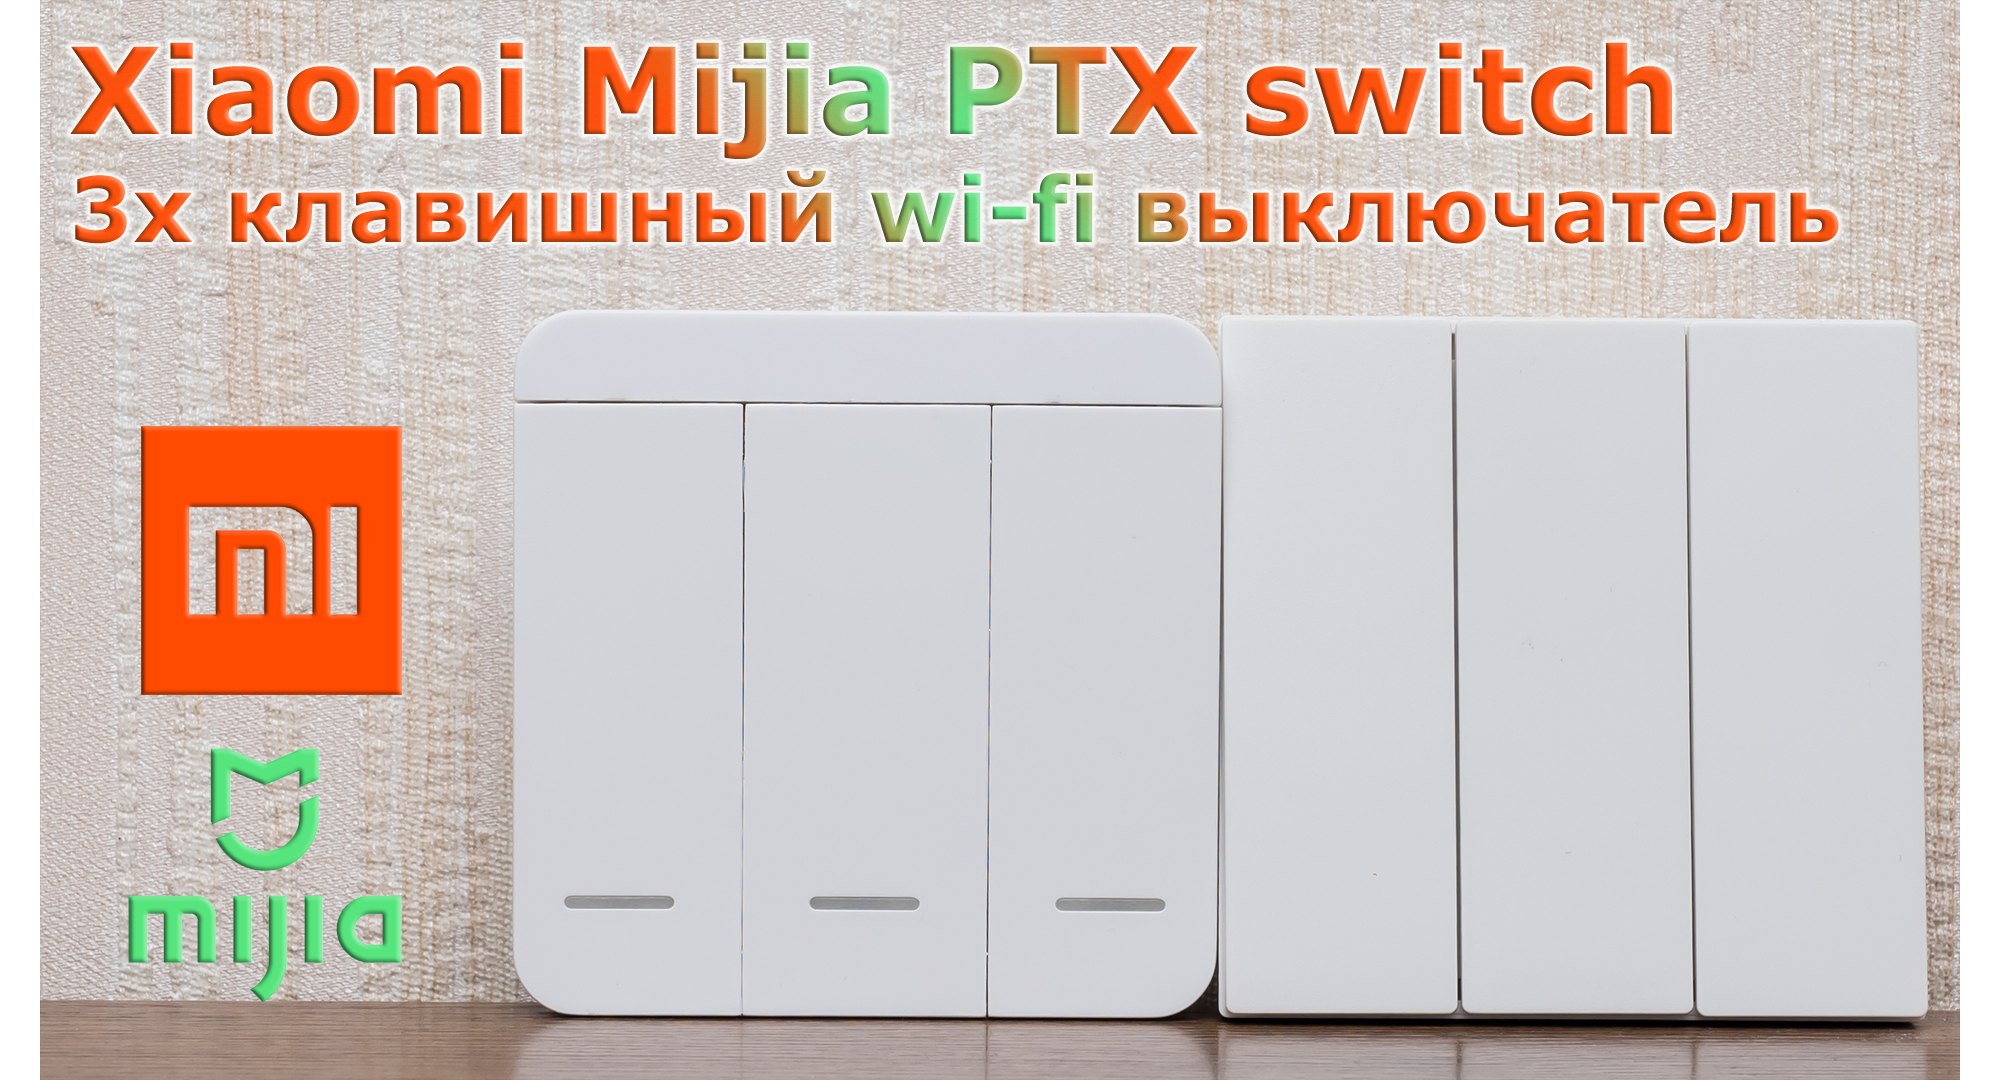 Xiaomi Mijia PTX switch: مفتاح Wi-Fi ذكي مع مكرر 3